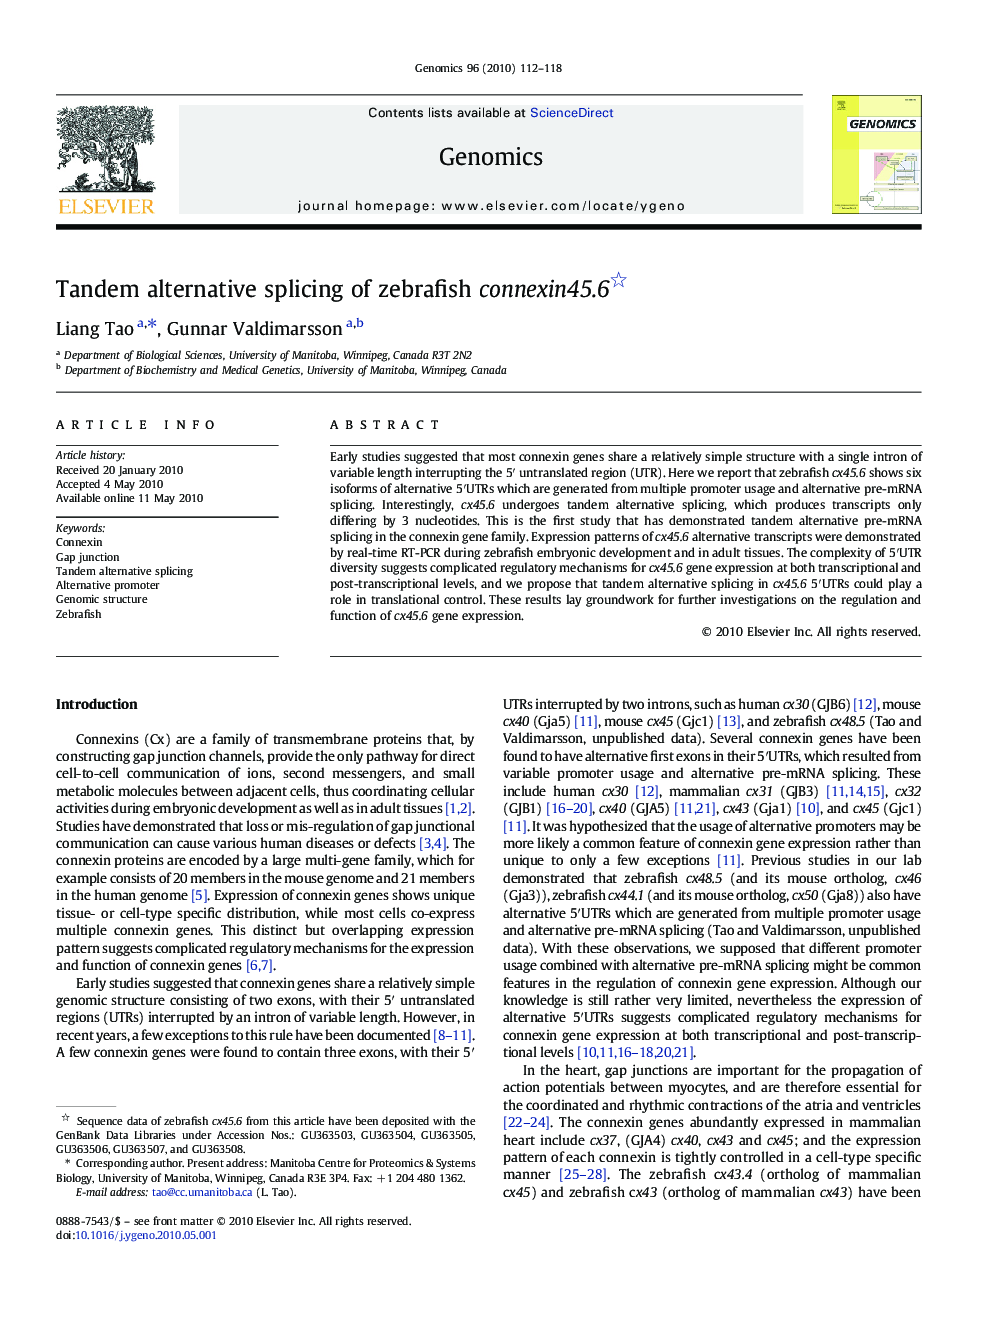 Tandem alternative splicing of zebrafish connexin45.6 